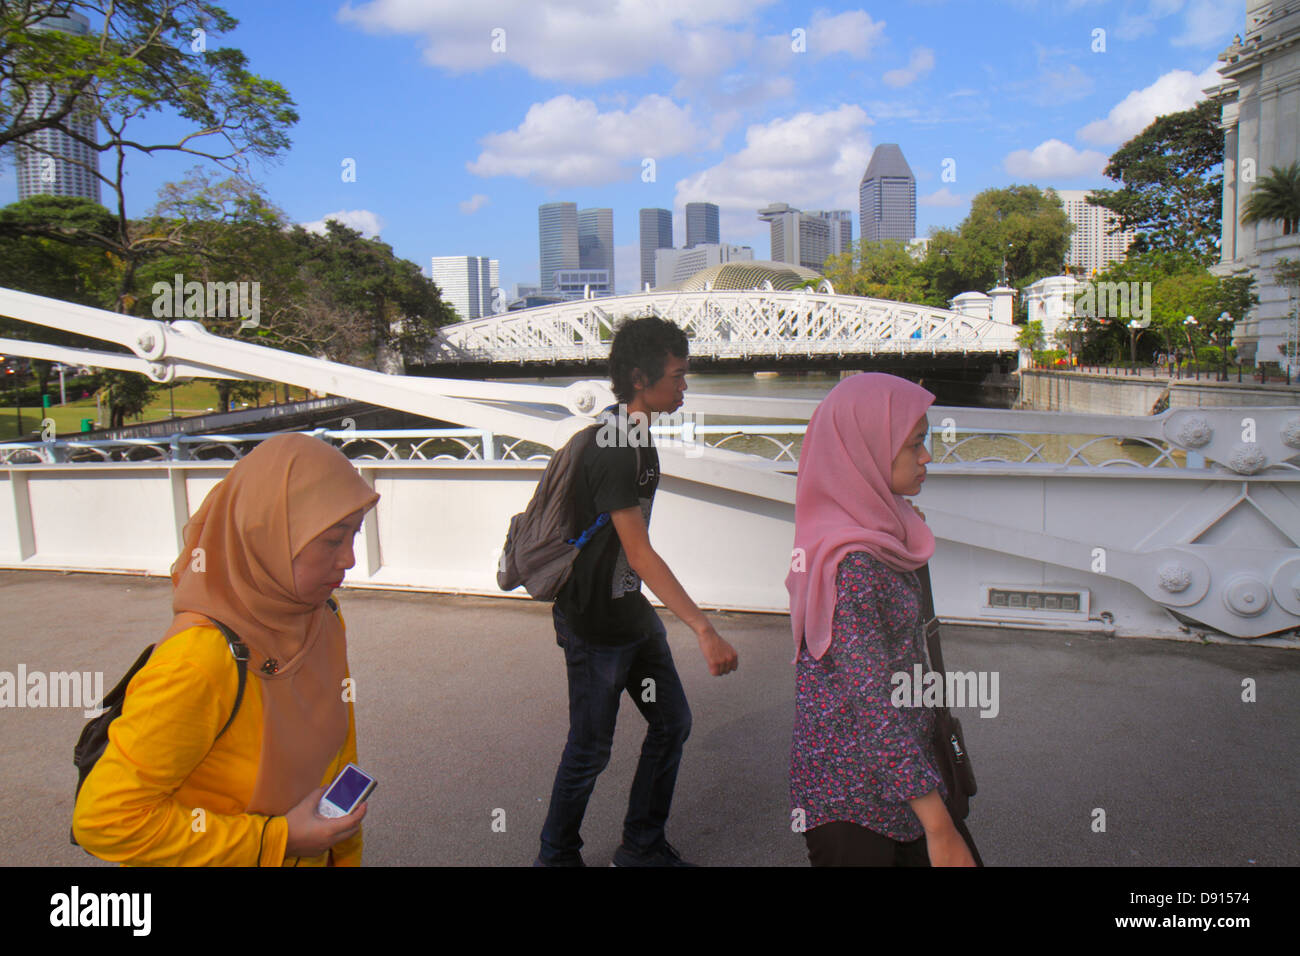 Singapore Singapore River, Boat Quay, Cavenagh Bridge, homme asiatique hommes hommes, femme femmes, musulman, hijab, Sing13012062 Banque D'Images